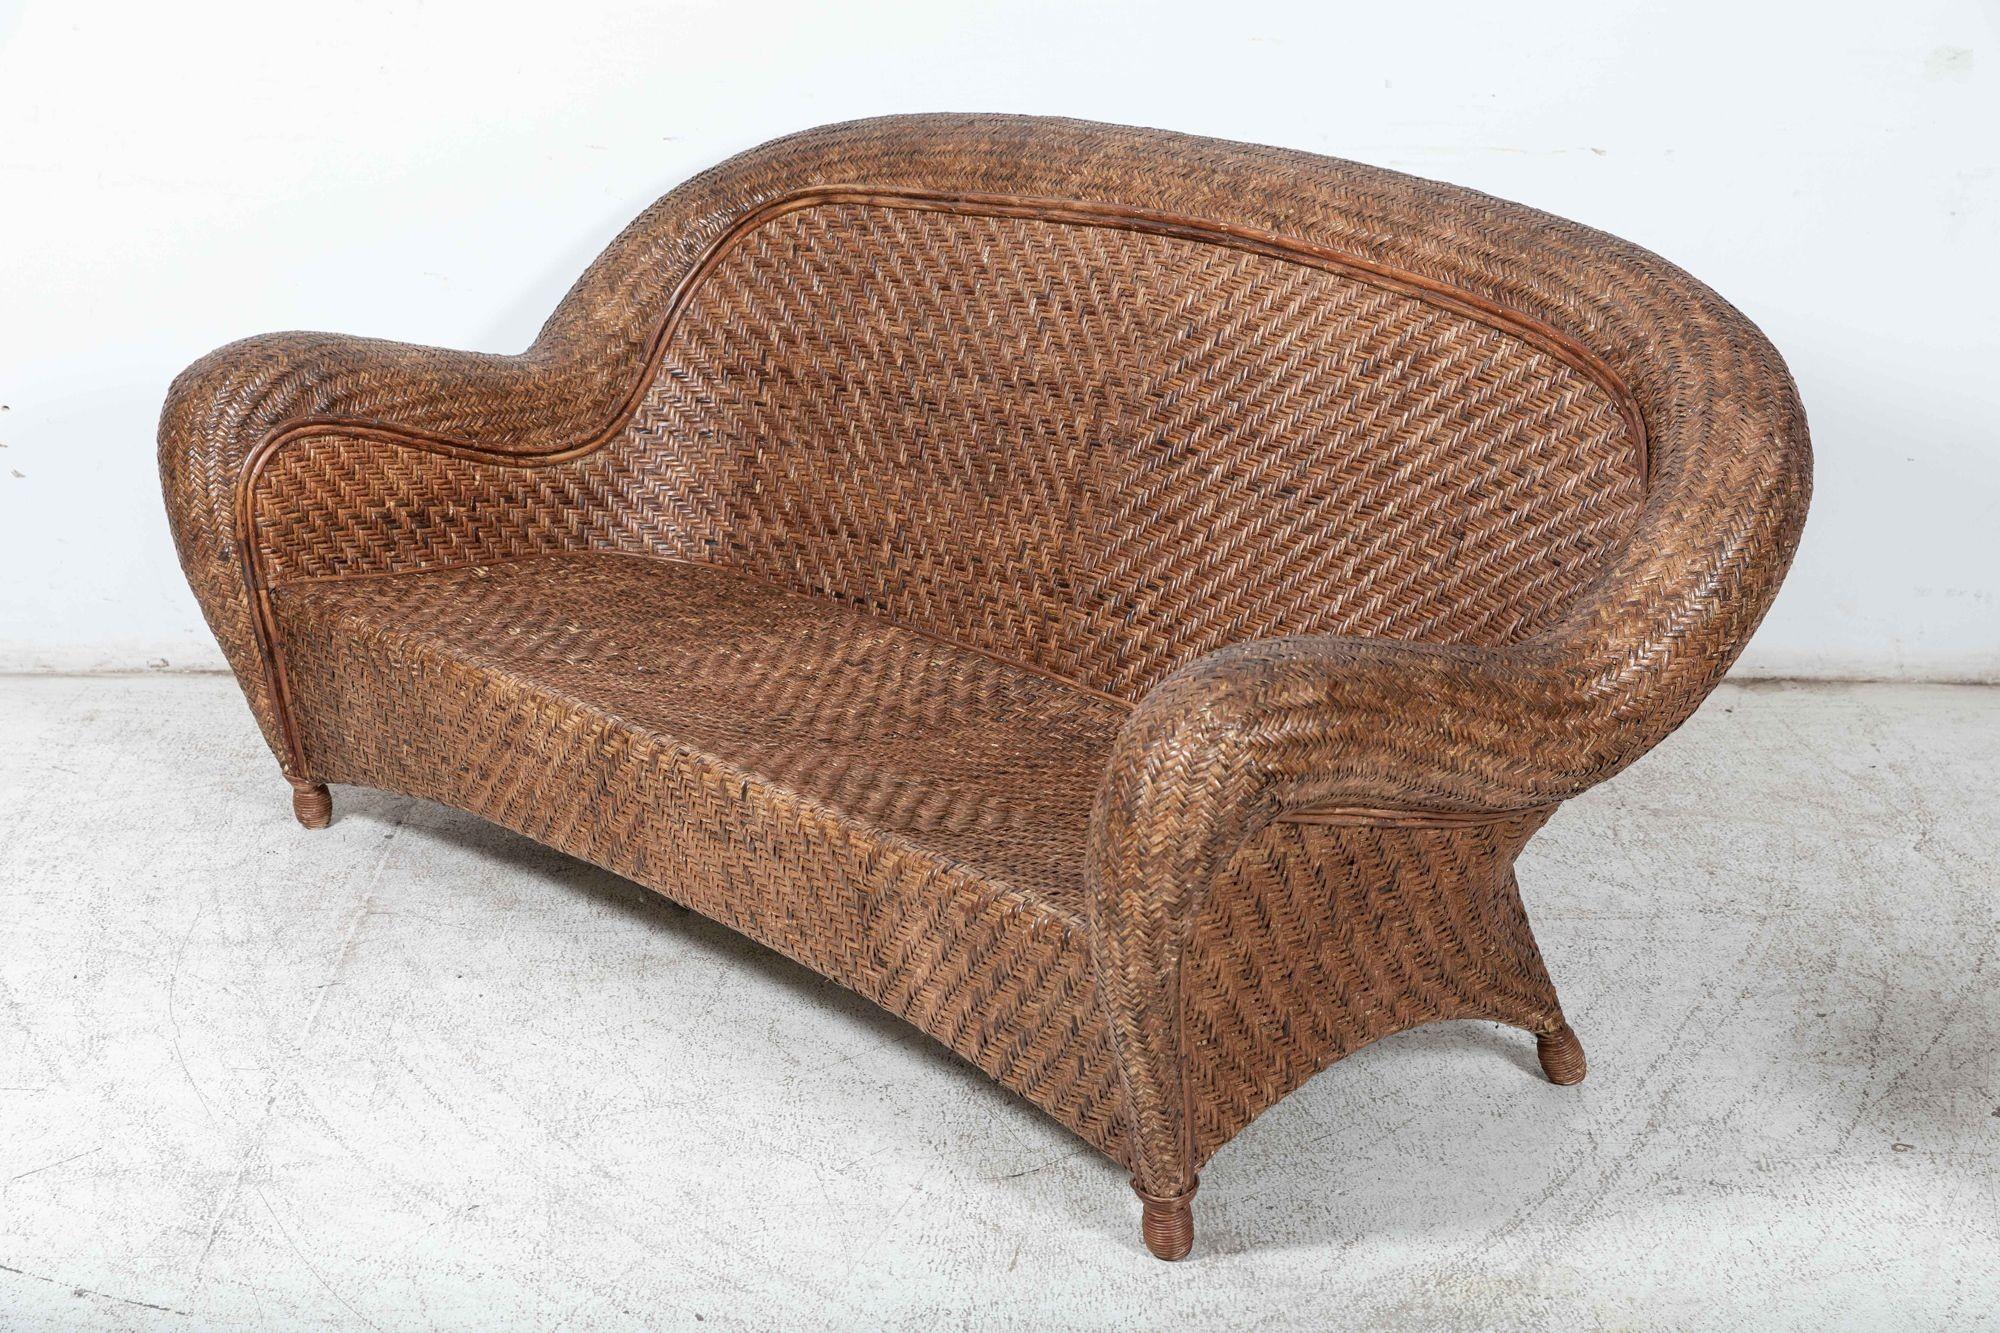 um 1930
Französische Bambus-Rattan-Sitzgruppe mit Sofa, Sessel und Couchtisch
Ausgezeichnete Form und Patinierung
sku 1089
Sofa B186 x T61 x H87 cm
Stuhl B88 x T61 x H87 cm
Couchtisch B93 x T63 x H36 cm.